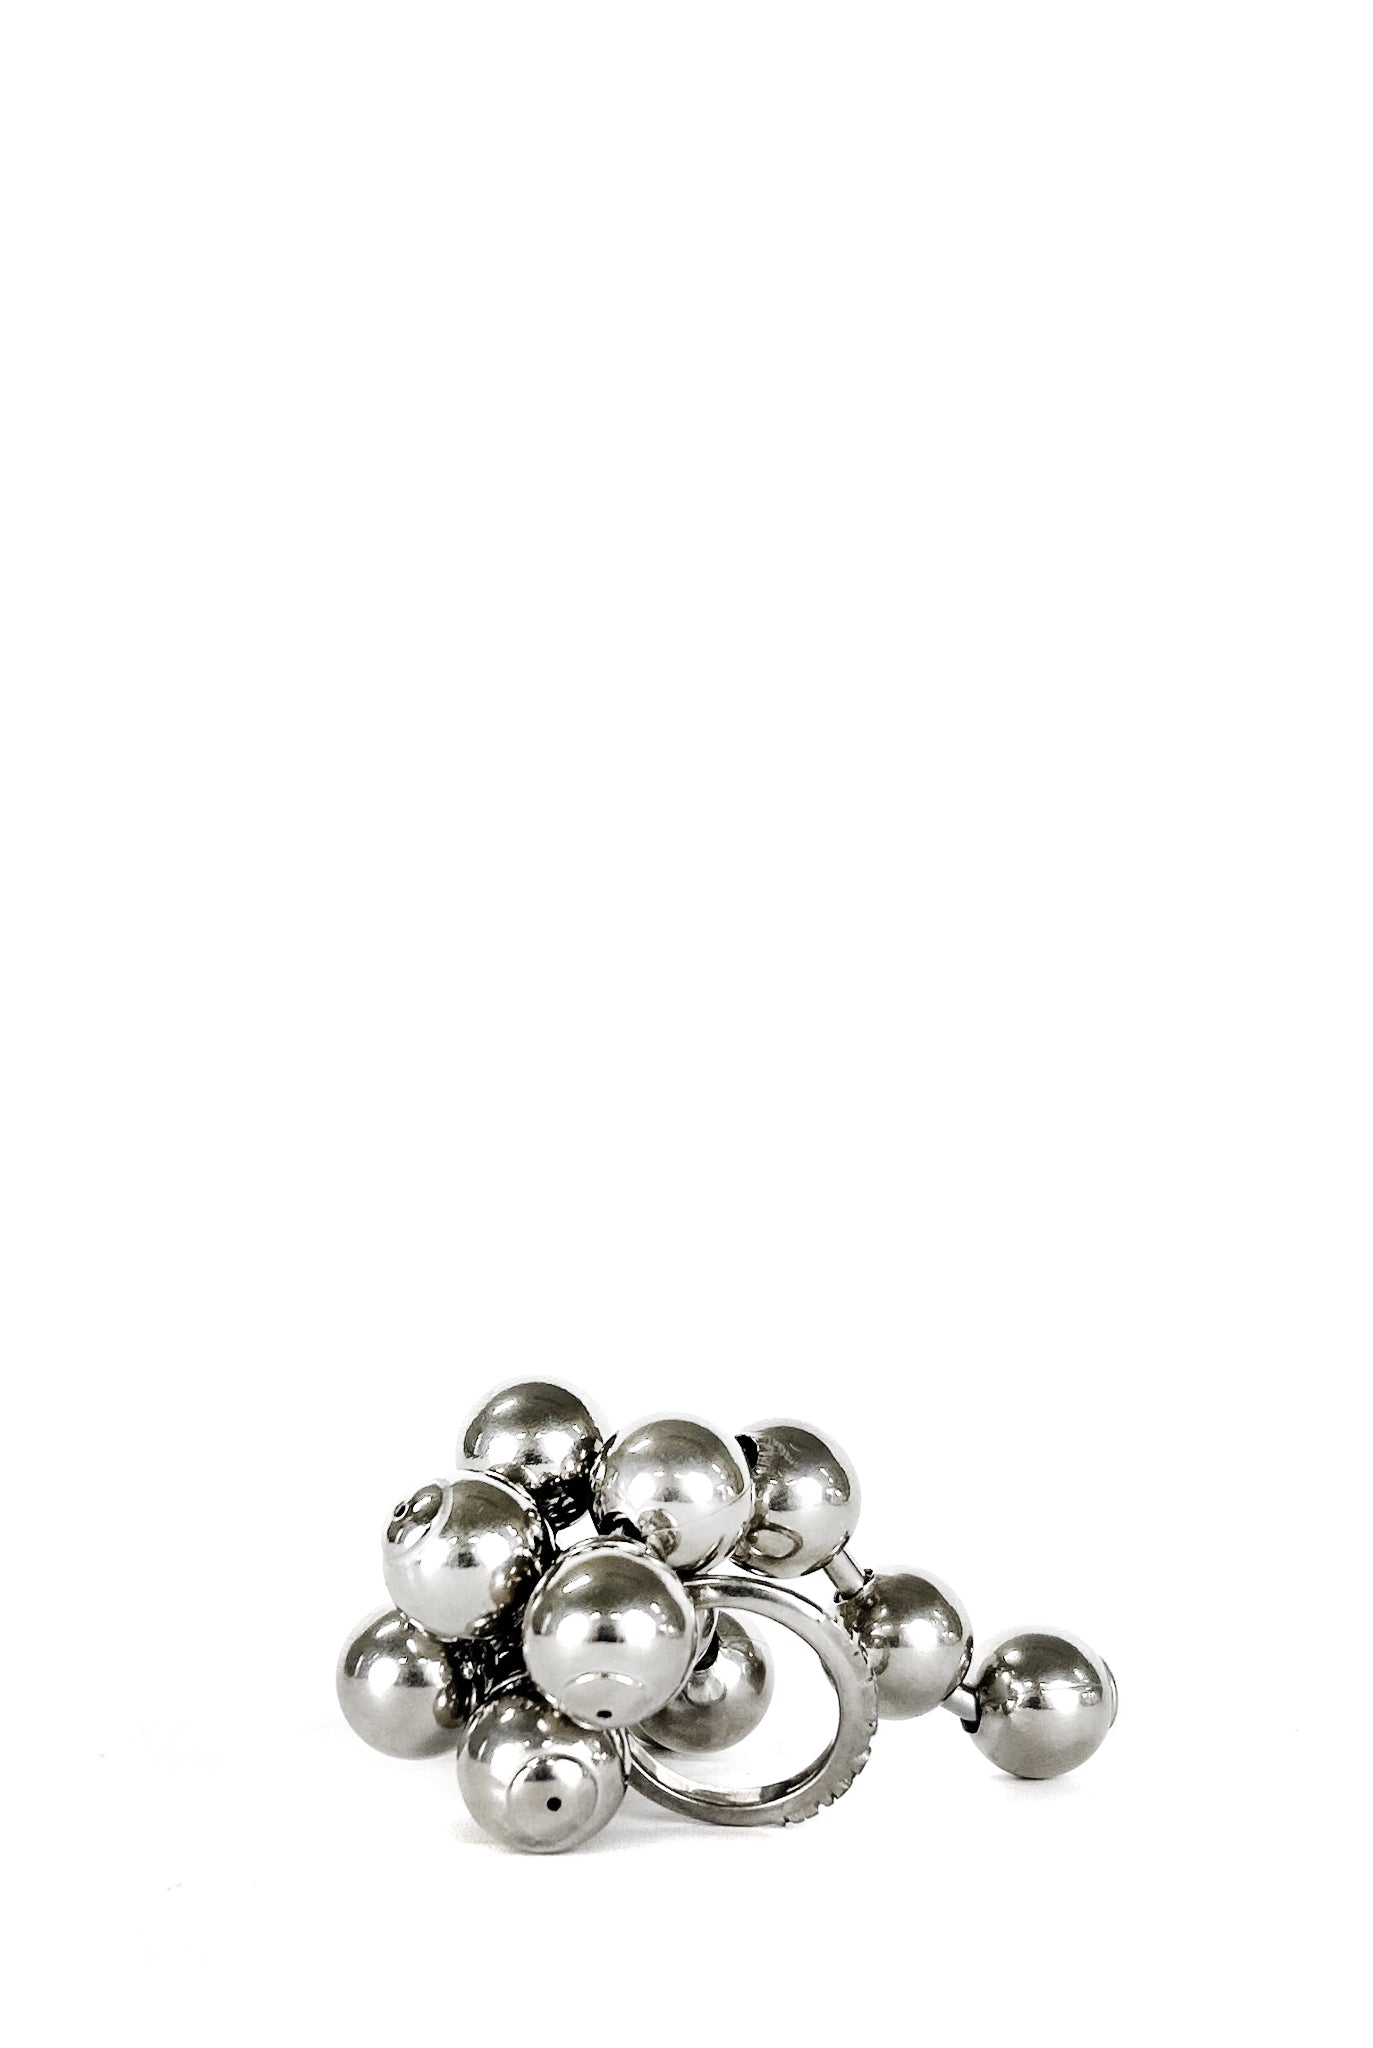 Hugo Kreit Ball Chain Ring, Silver